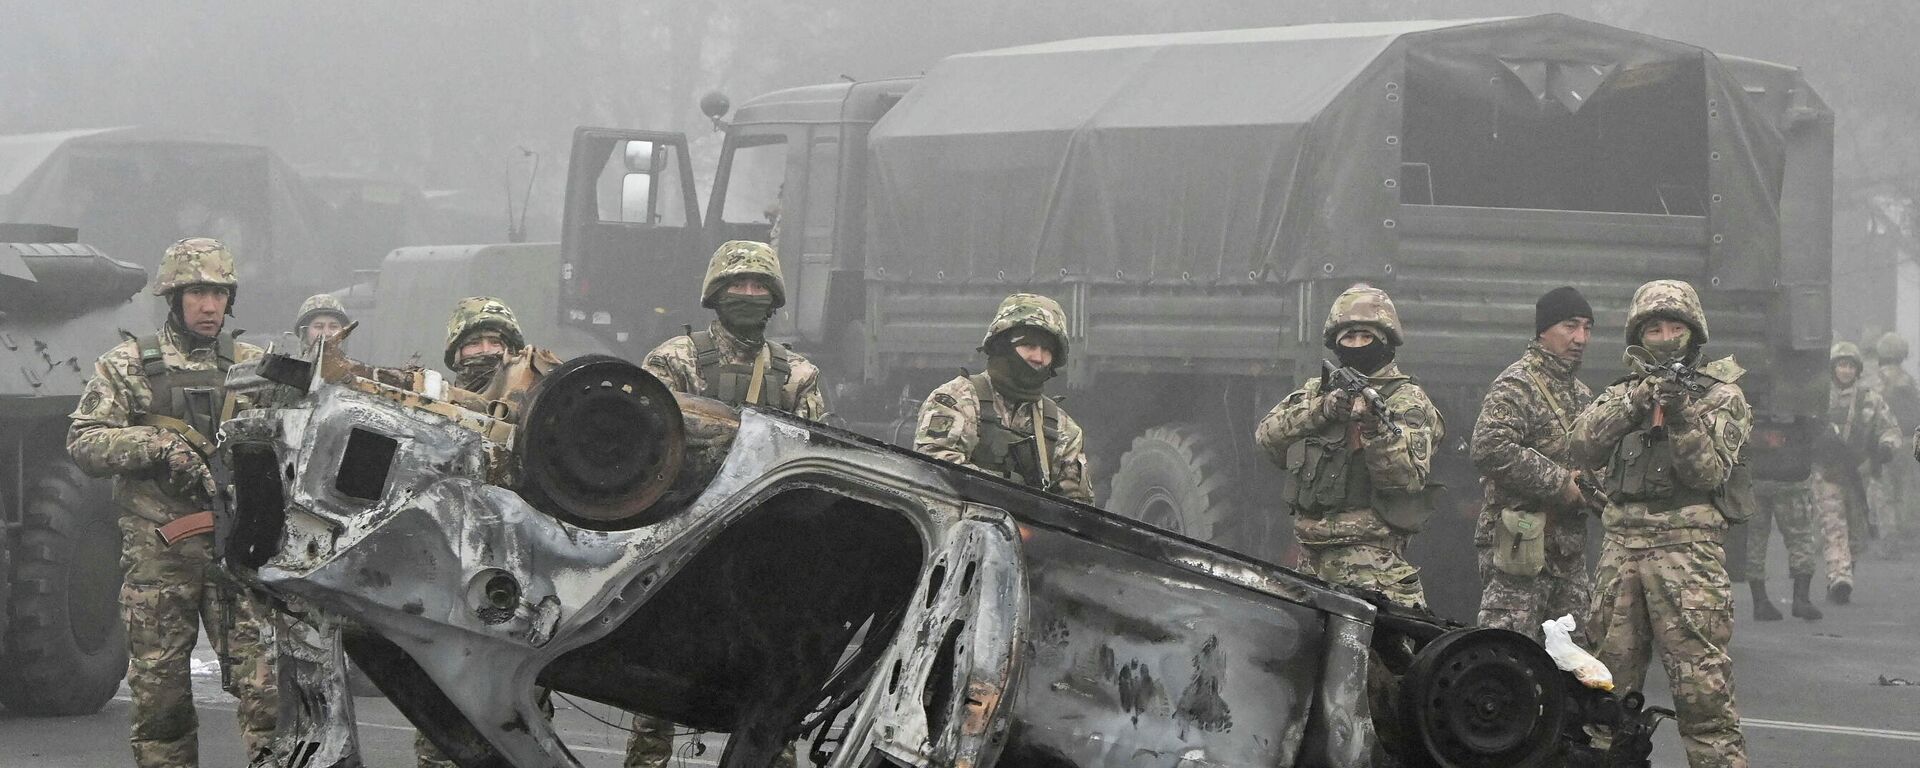 Казахские силовики во время протестов в Алма-Ате, 6 января 2022 - Sputnik Литва, 1920, 08.01.2022